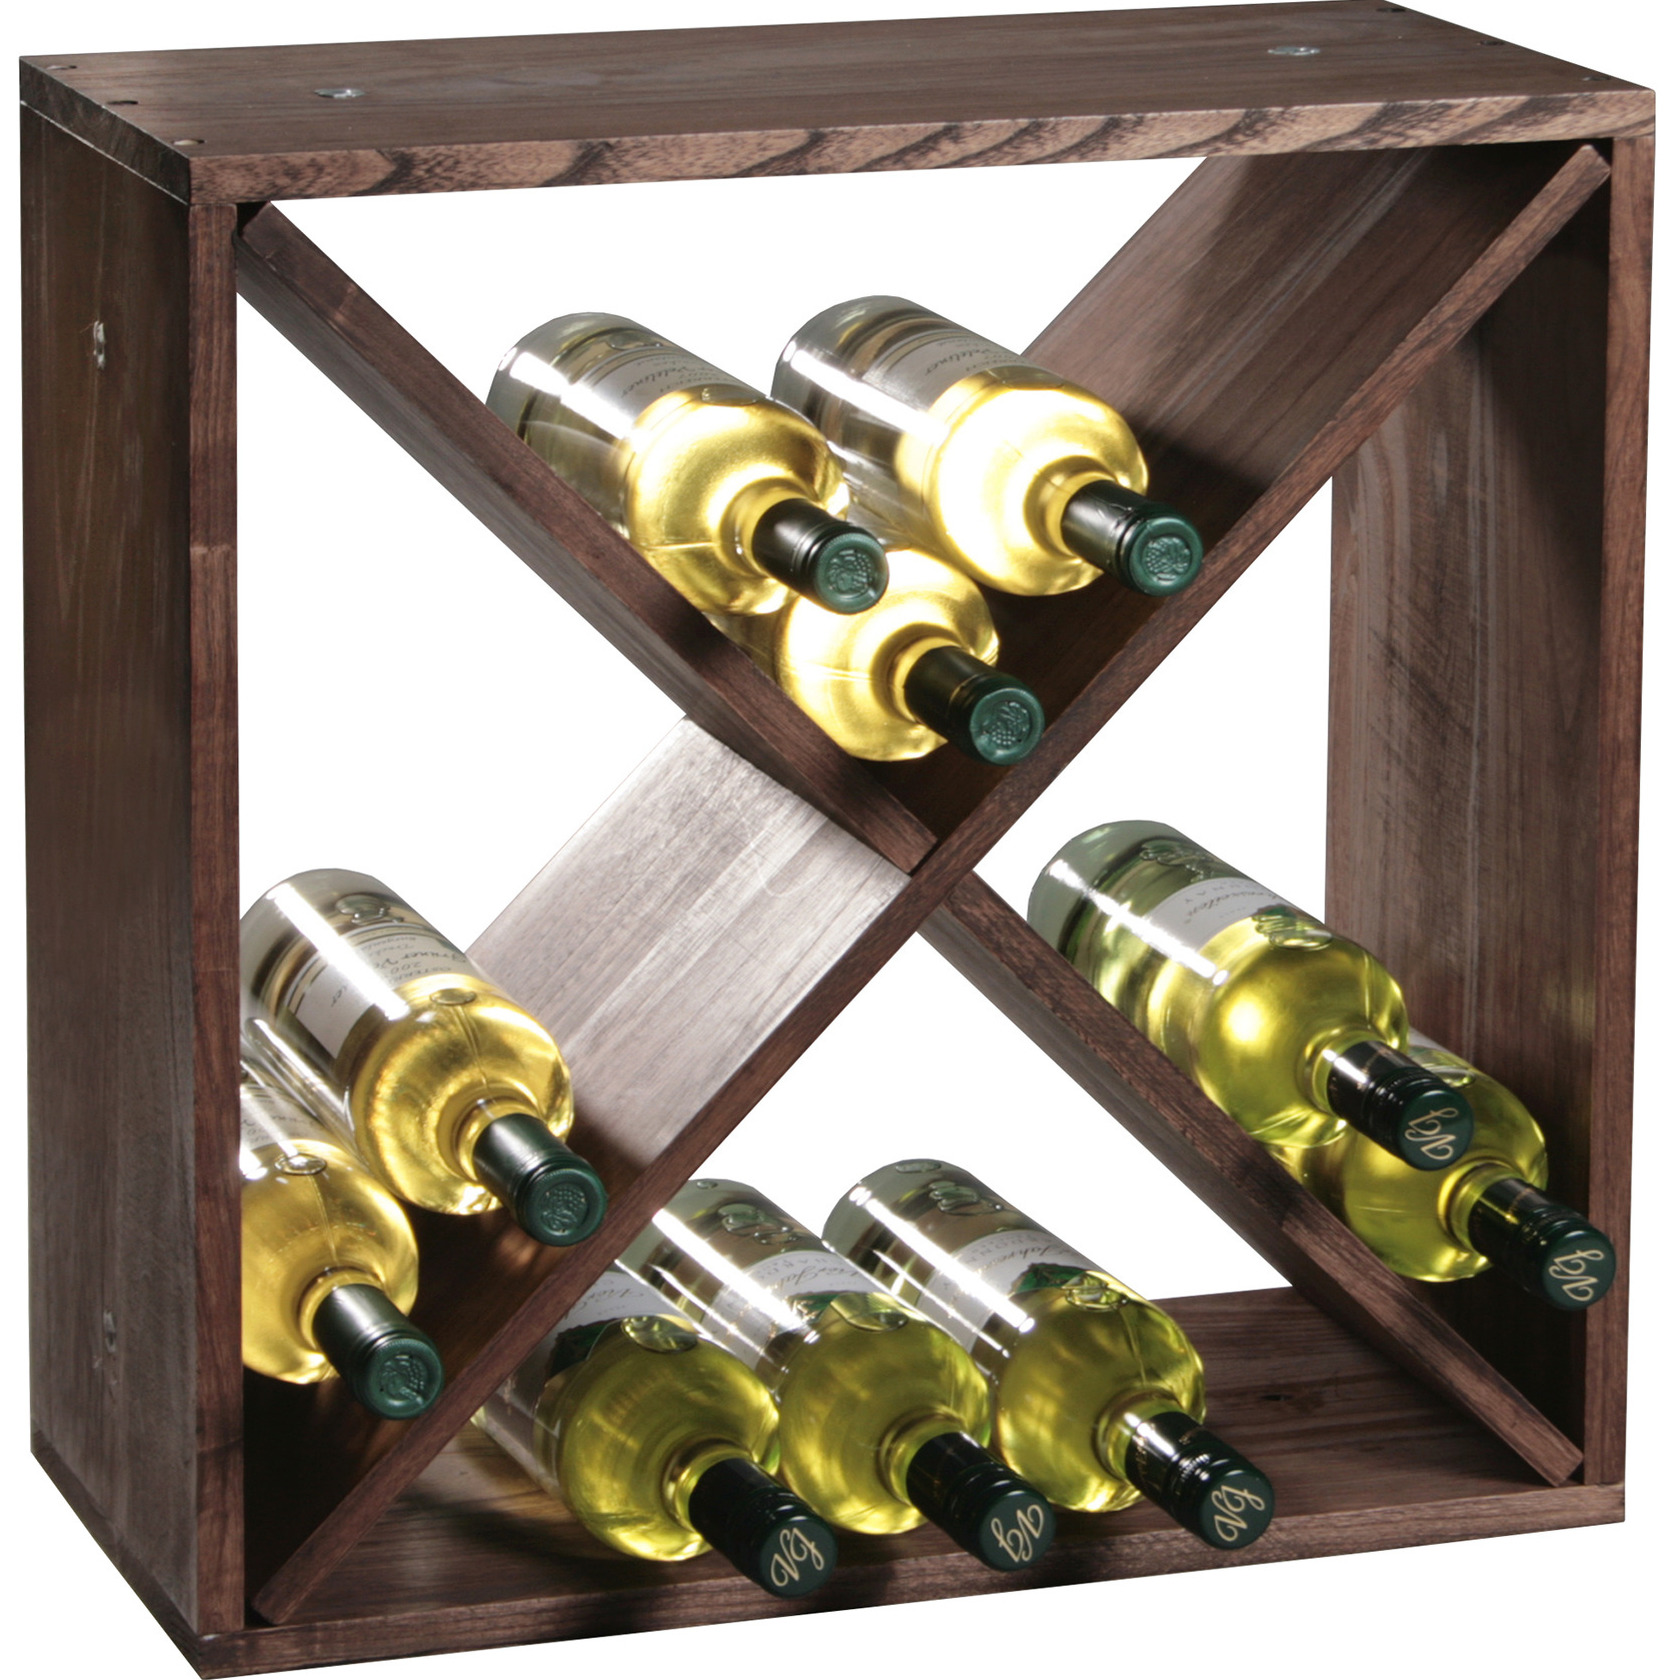 1x Houten wijnflesrek-wijnrekken staand voor 24 flessen 25 x 50 x 50 cm